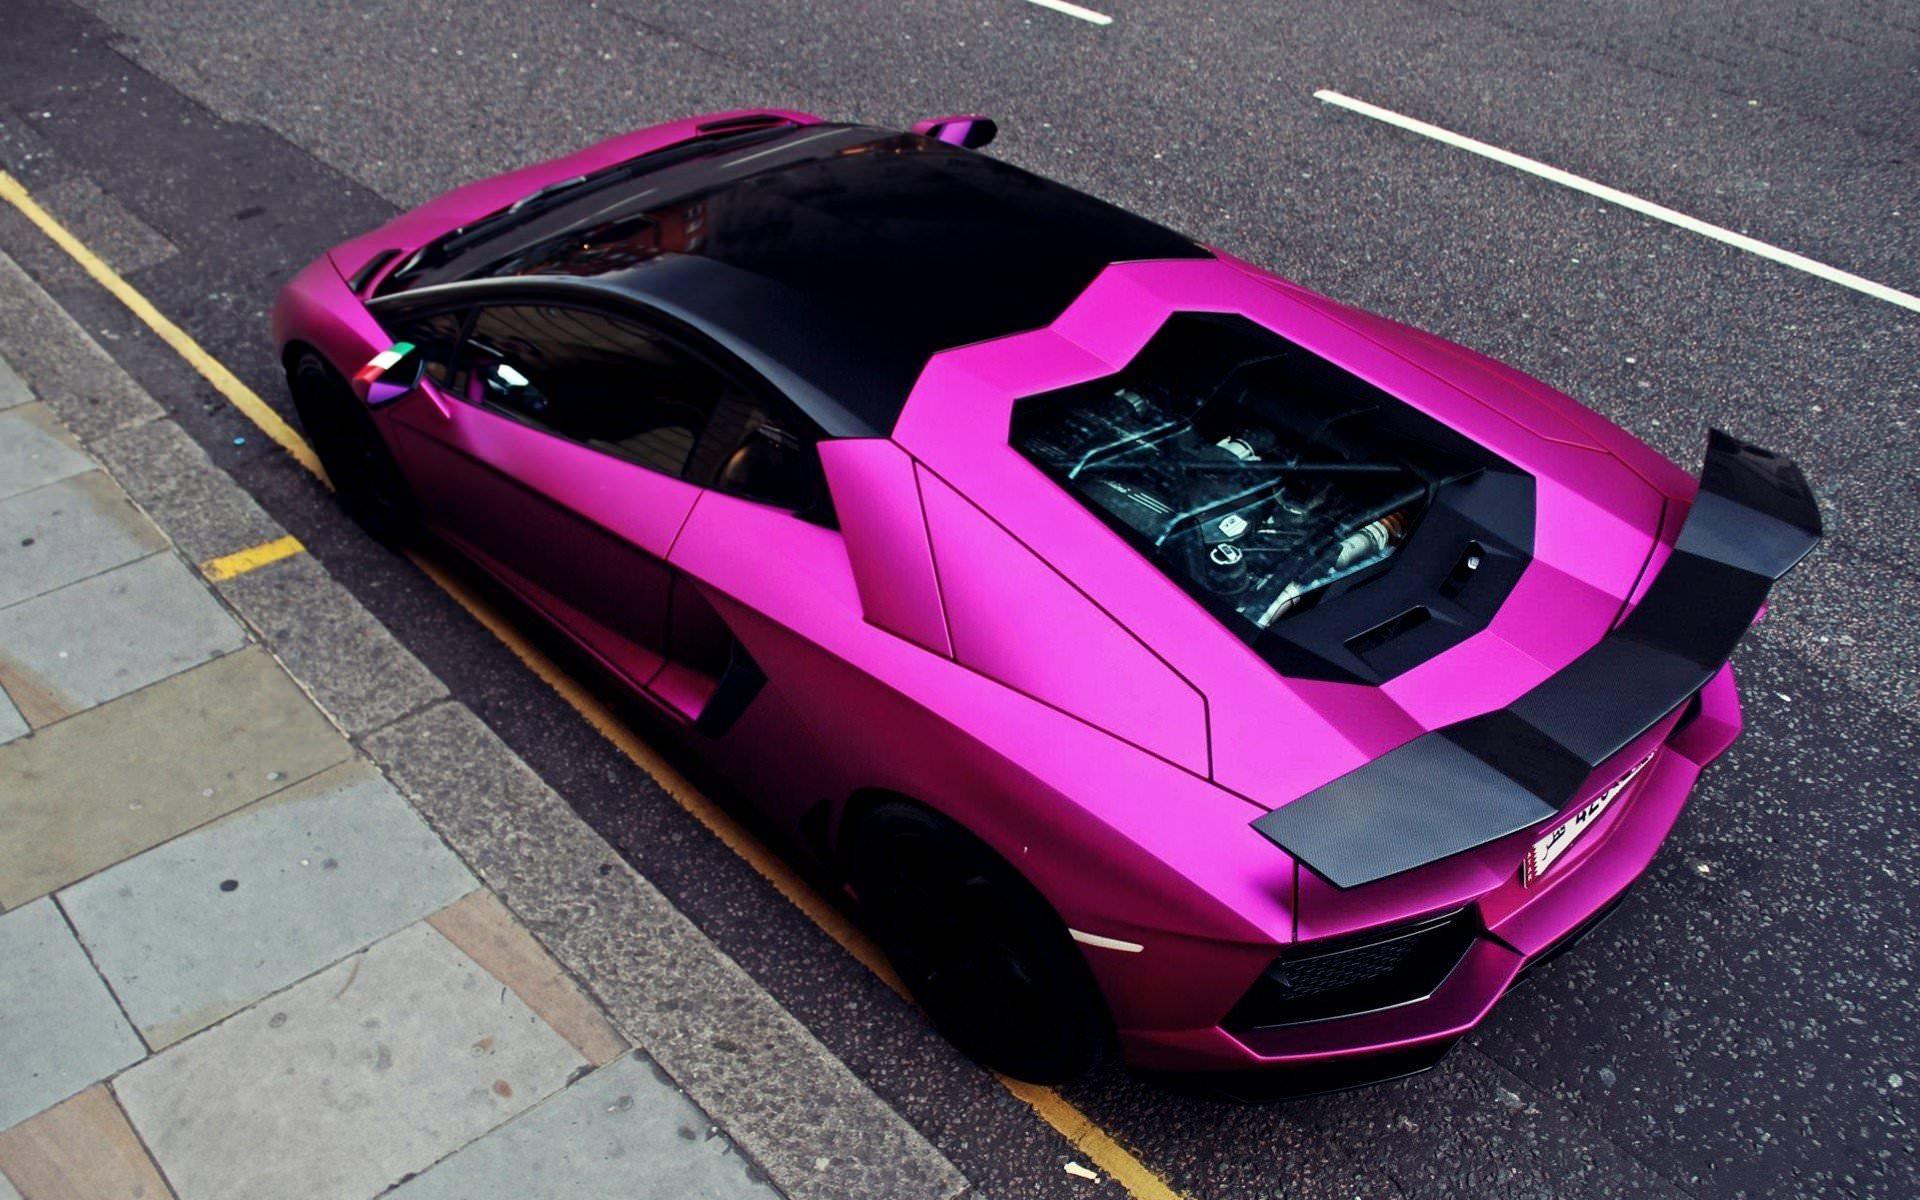 Purple Lamborghini Wallpapers - Top Free Purple Lamborghini Backgrounds ...